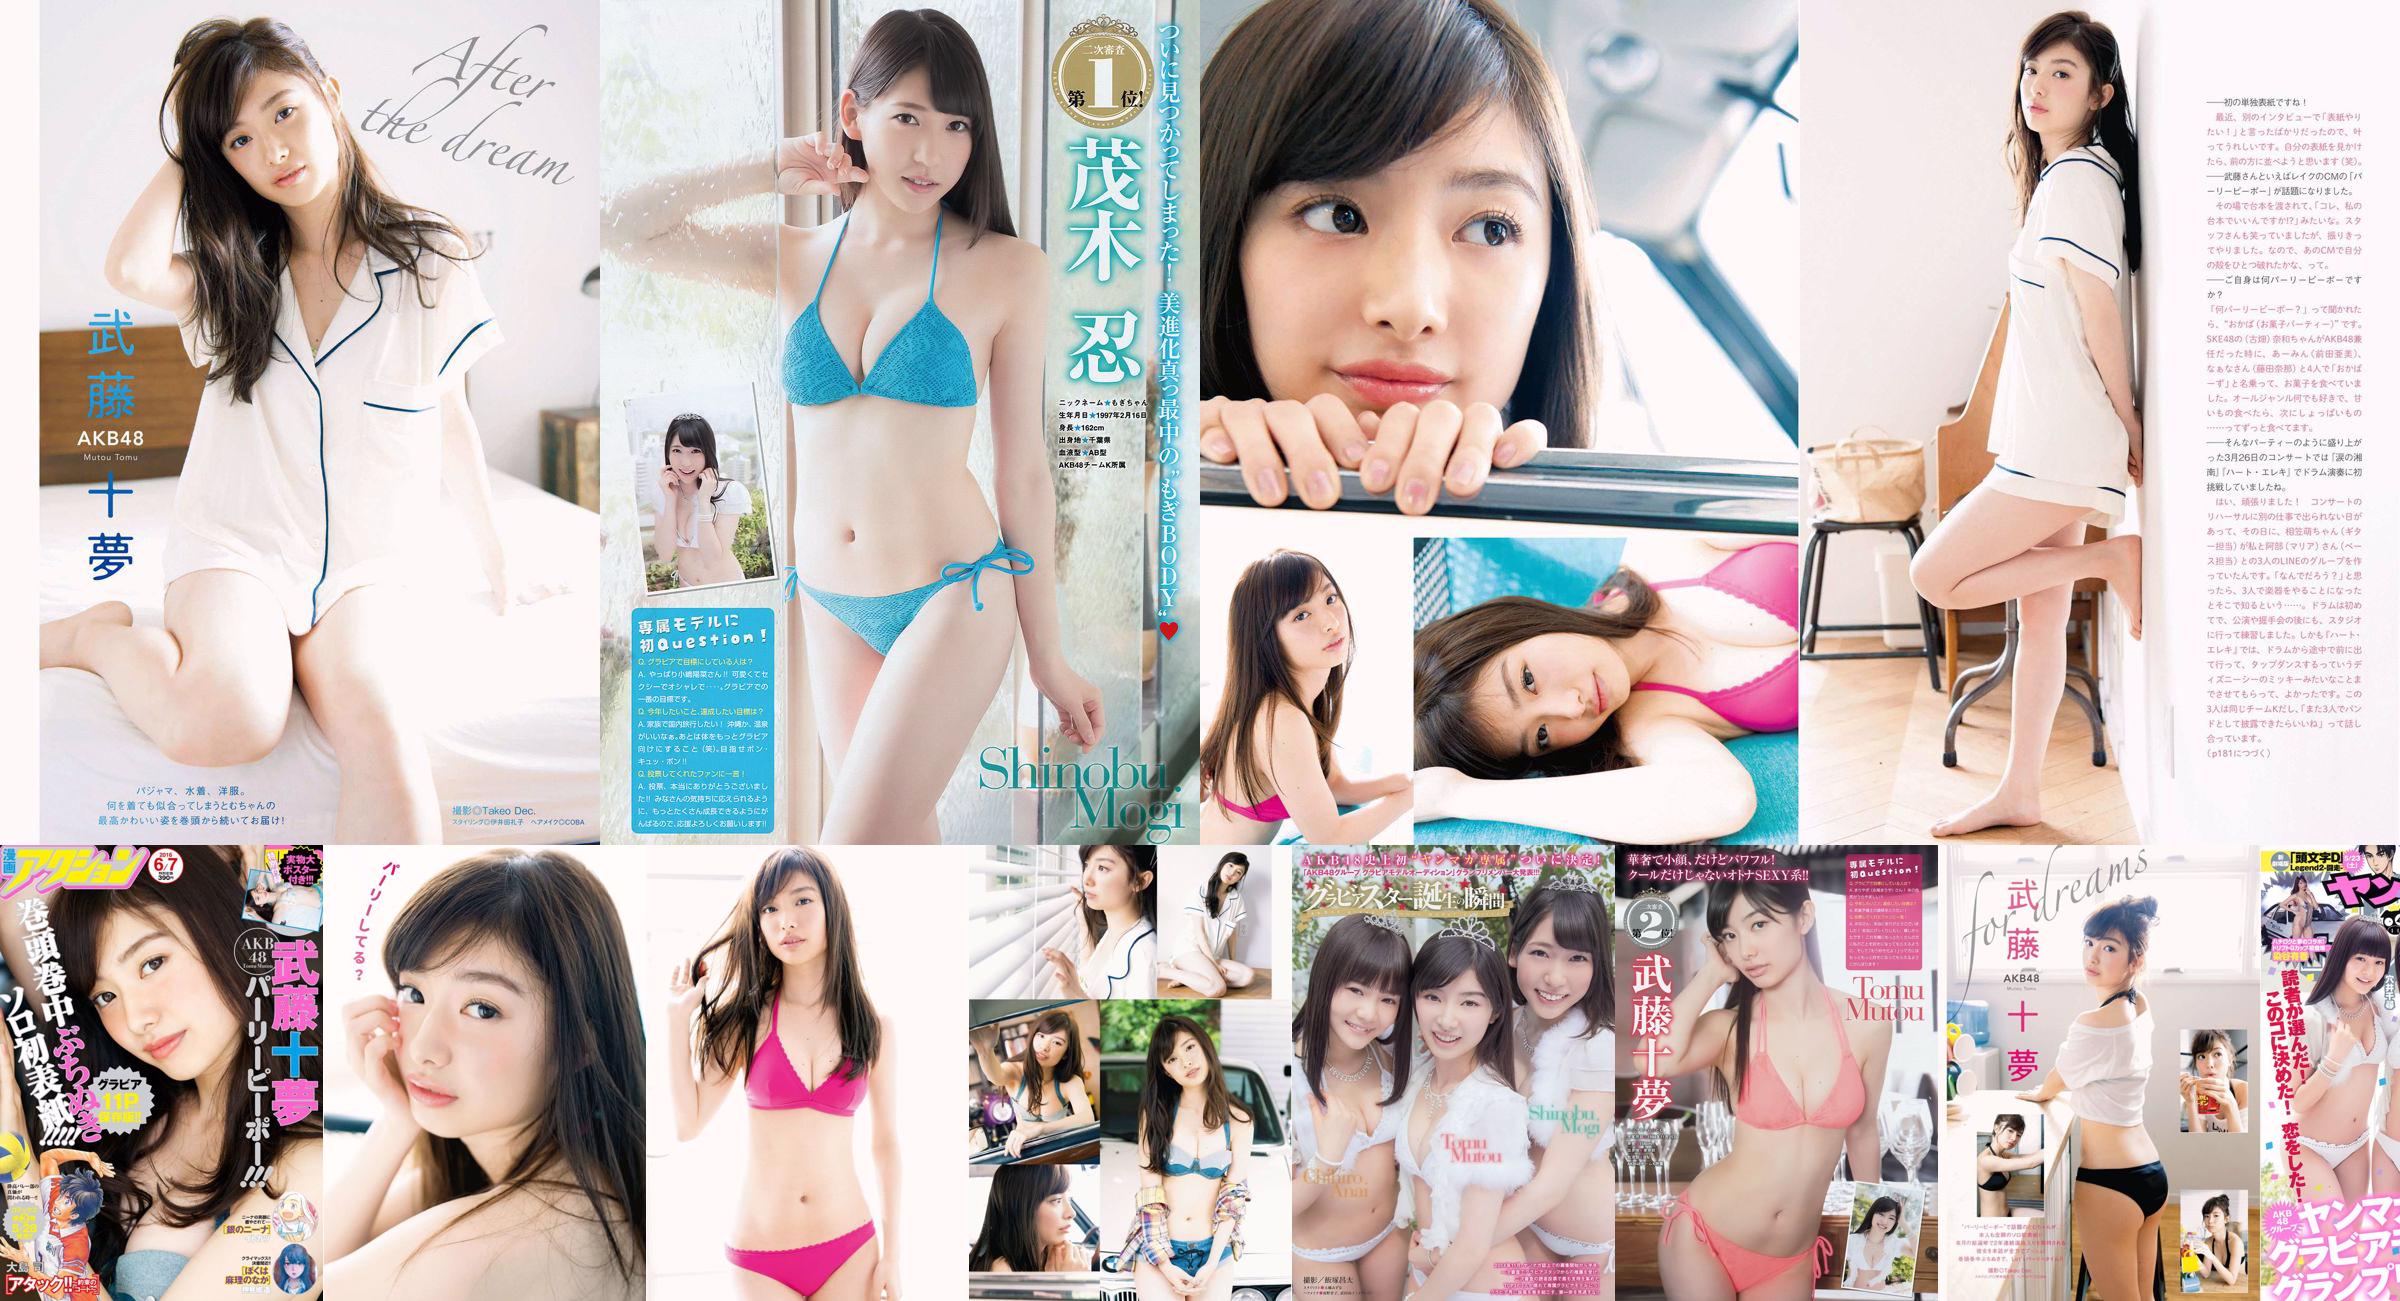 [Young Magazine] Tomu Muto Shinobu Mogi Chihiro Anai Erina Mano Yuka Someya 2015 No.25 Foto No.fcfbc8 Pagina 1